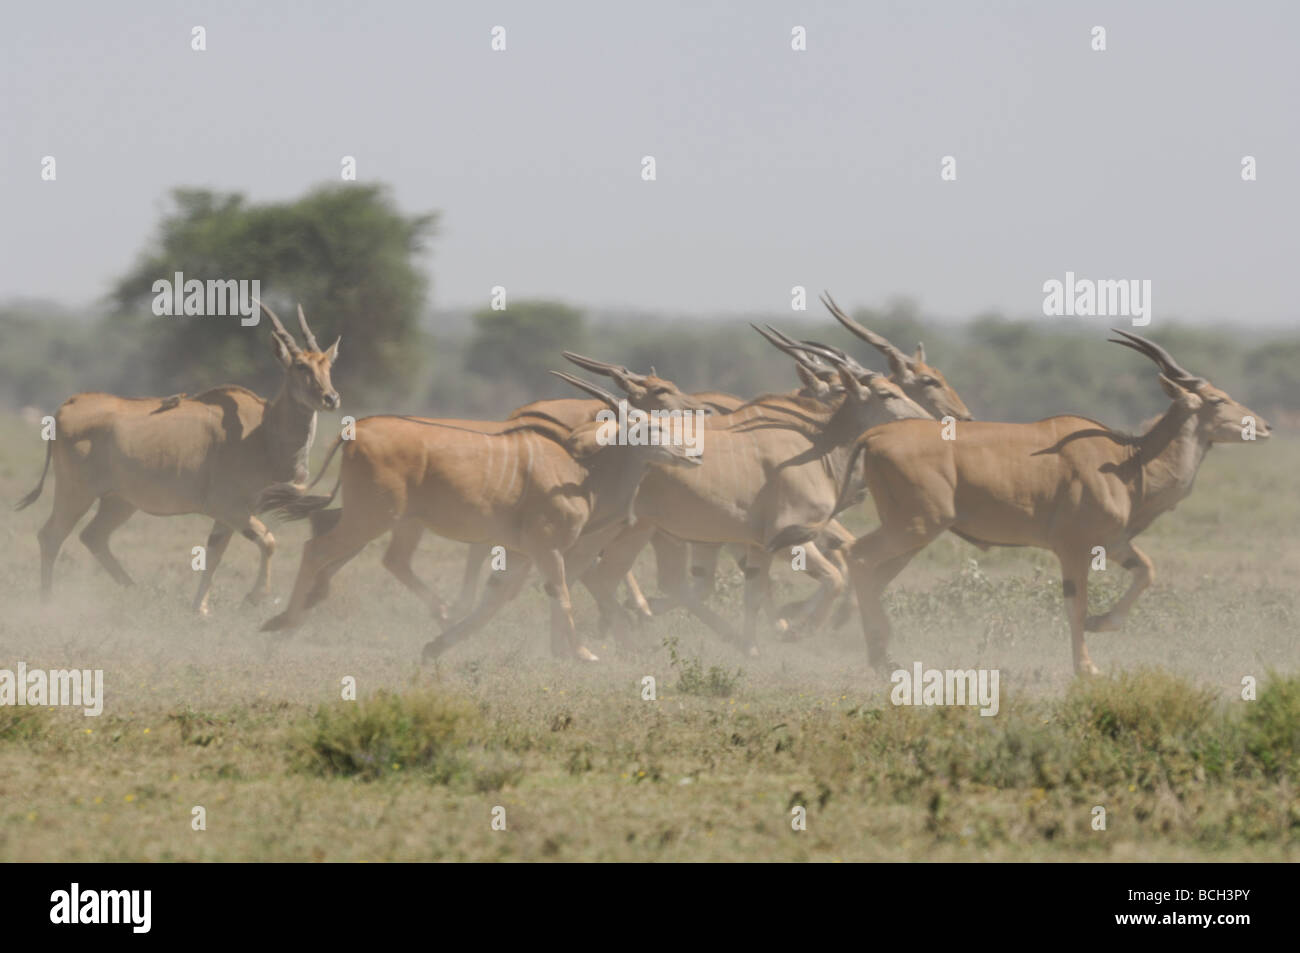 Stock Foto einer Herde Eland Ndutu Wald, Tansania, Februar 2009 laufen. Stockfoto